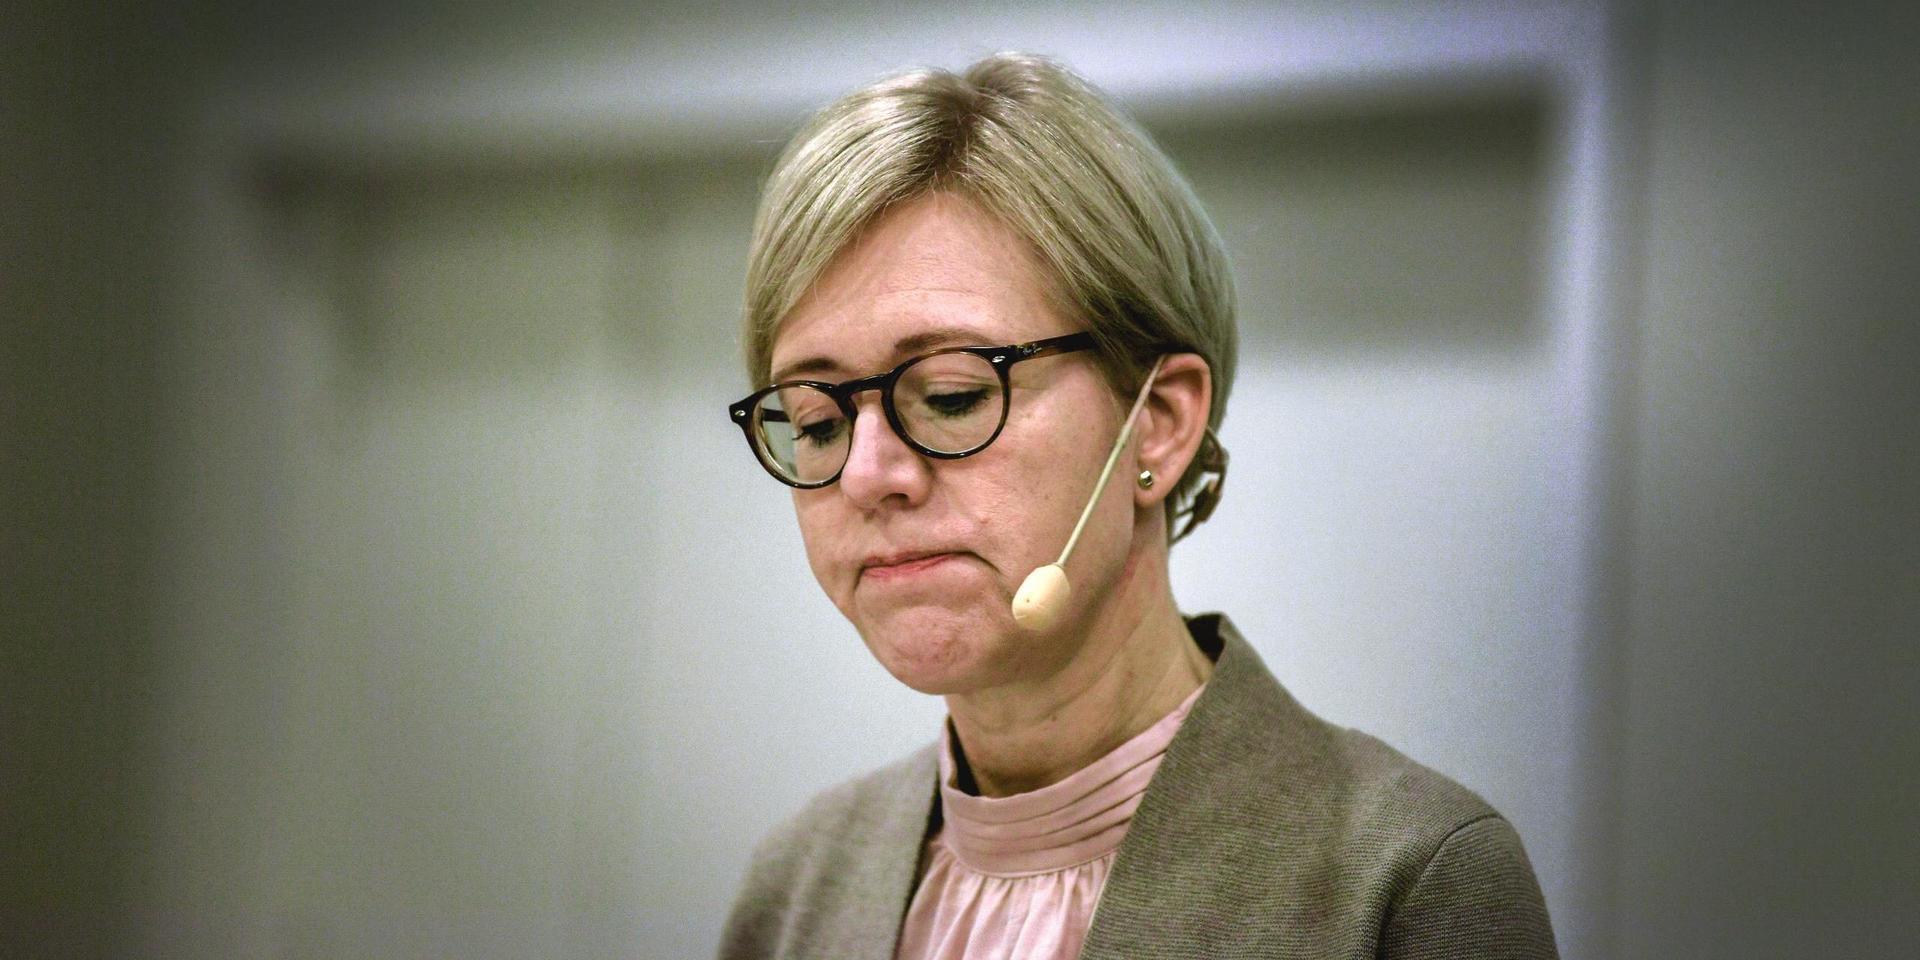 Förkrossande. Ingen region skötte sina åtaganden för de äldre under pandemin konstaterar Ivo:s generaldirektör Sofia Wallström.